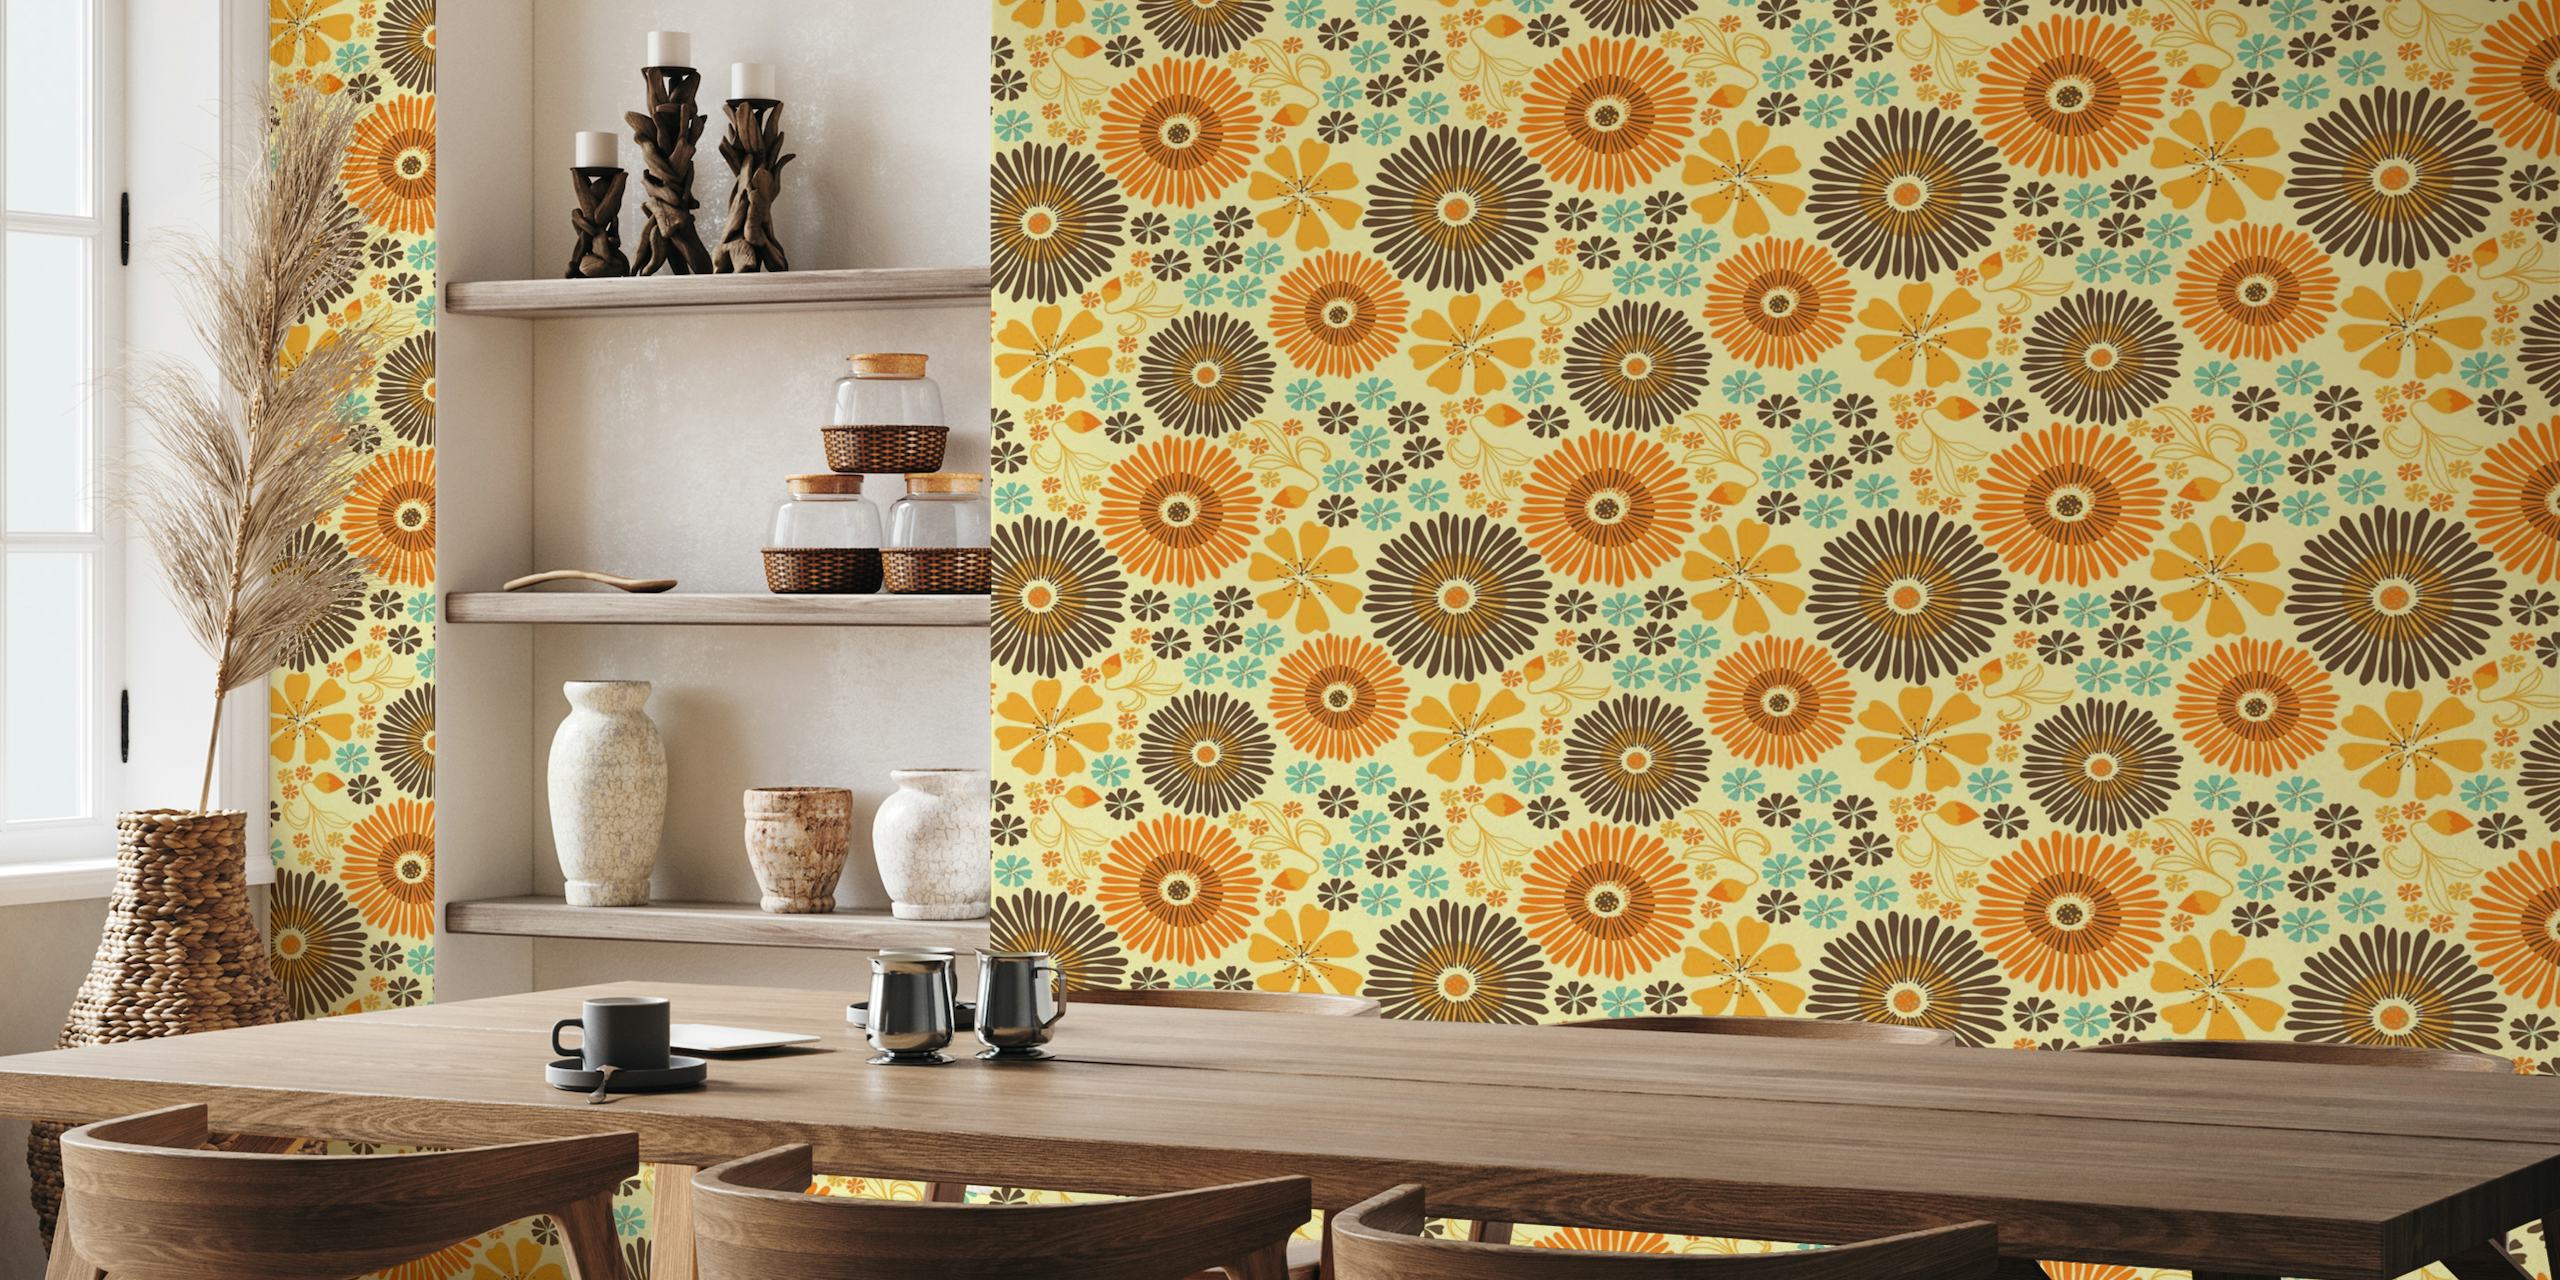 Retro zidna slika s cvjetnim uzorkom s toplim žutim, narančastim i smeđim tonovima